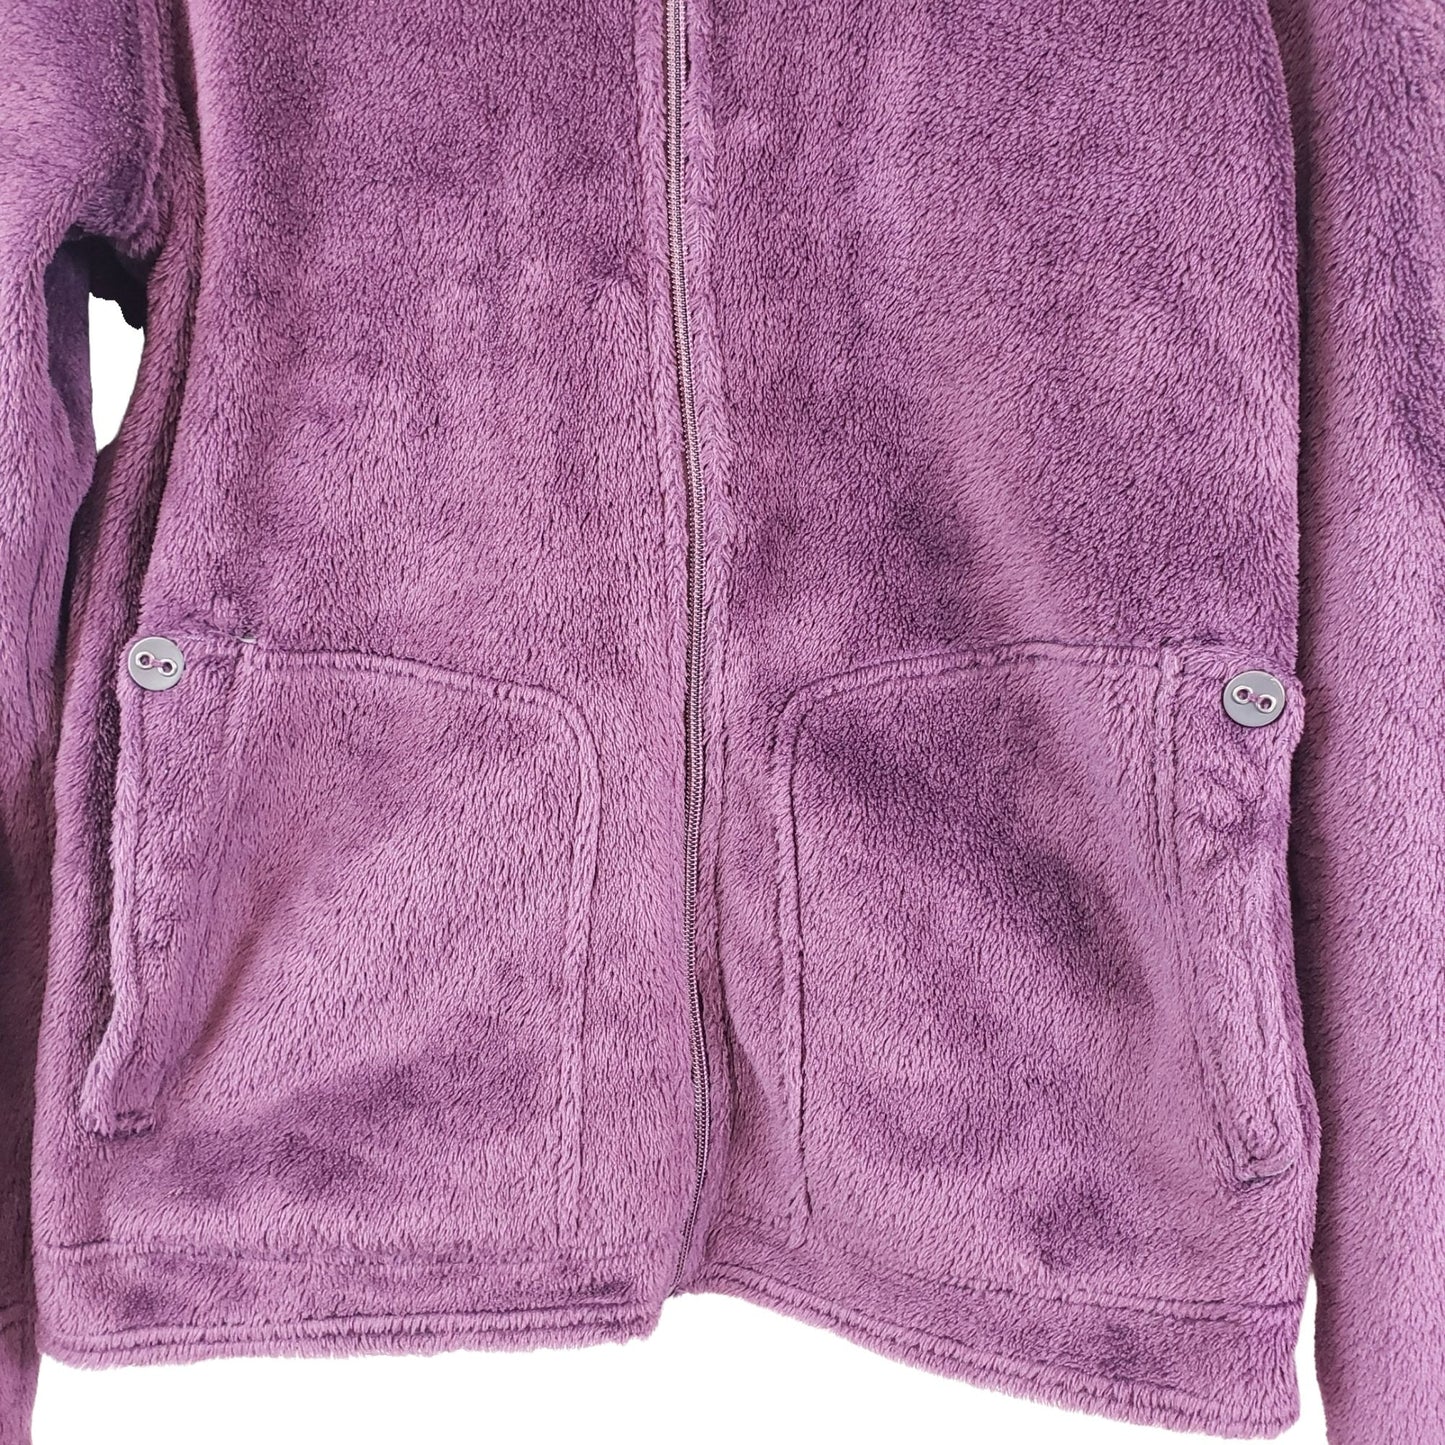 Merrell Polartec Full Zip Athletic Teddy Jacket Size XL